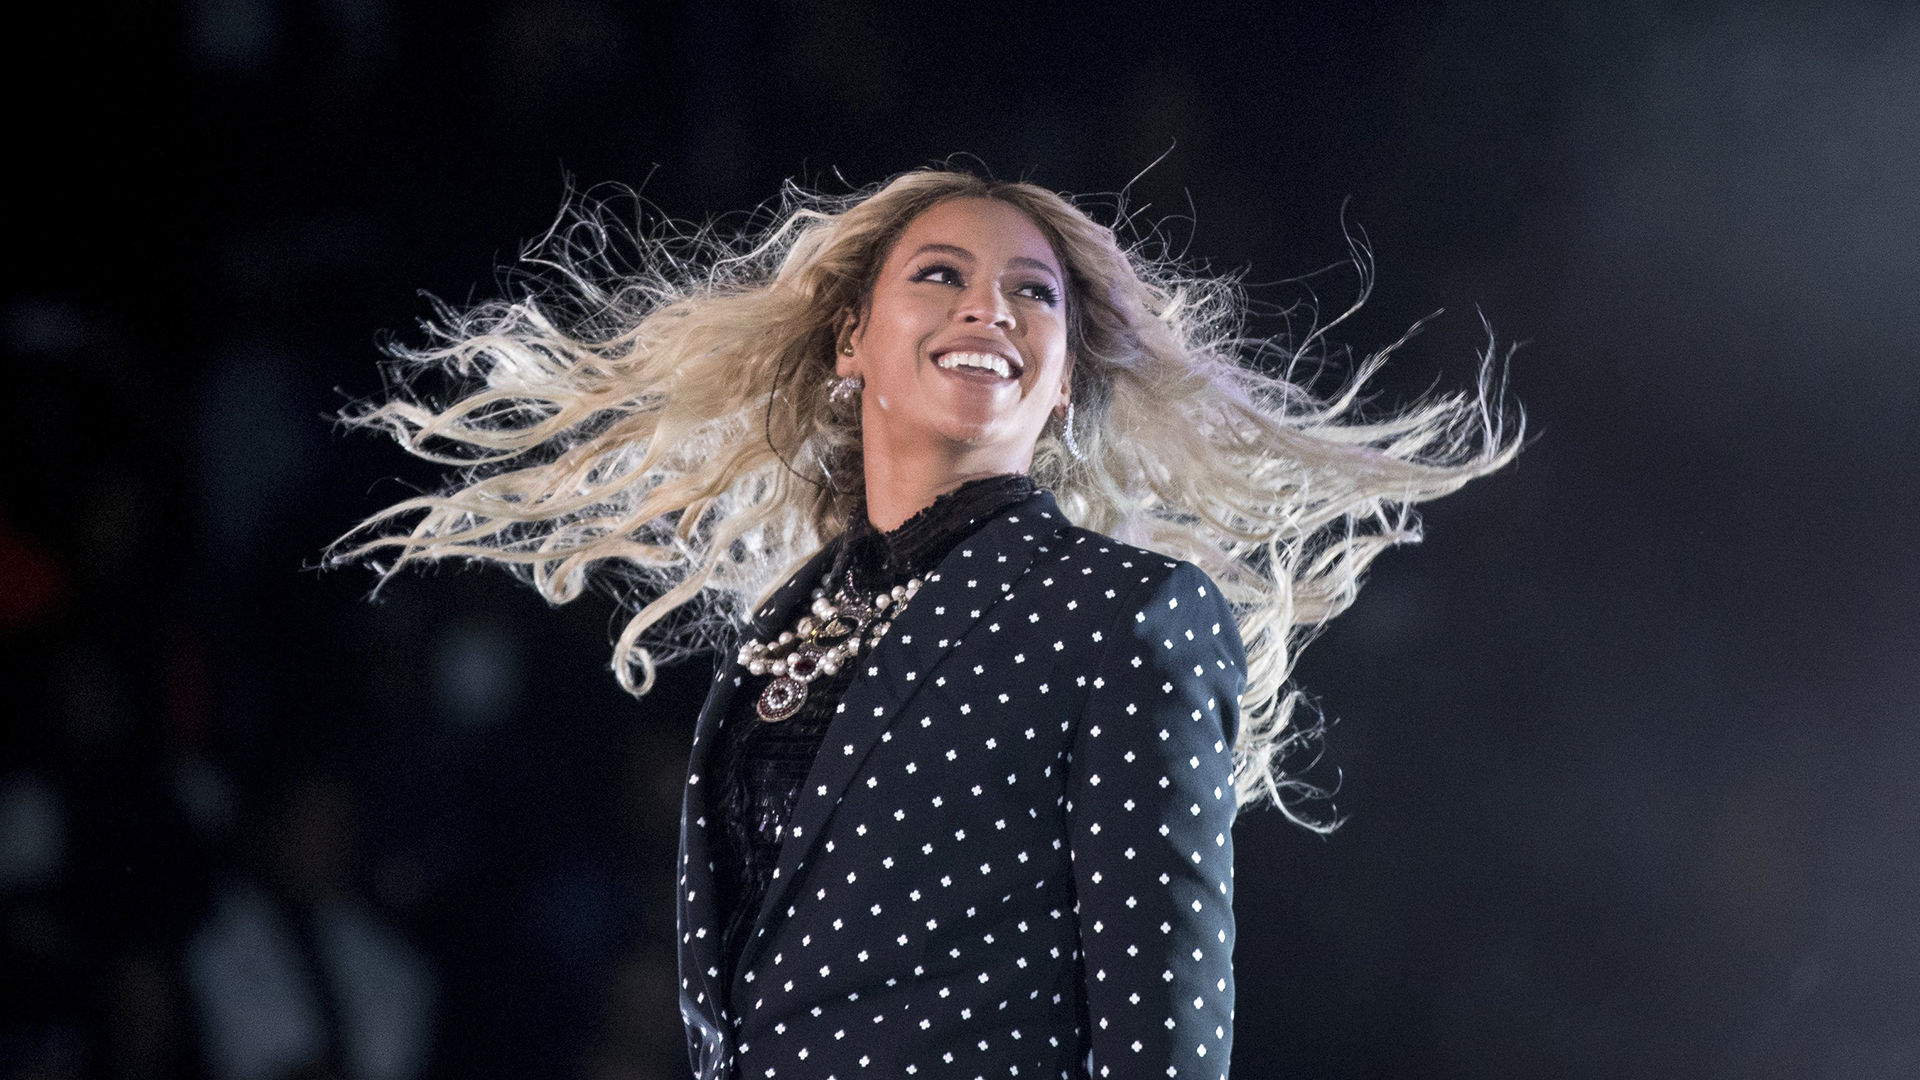 Beyoncé shares inspiration for 'Cowboy Carter' album